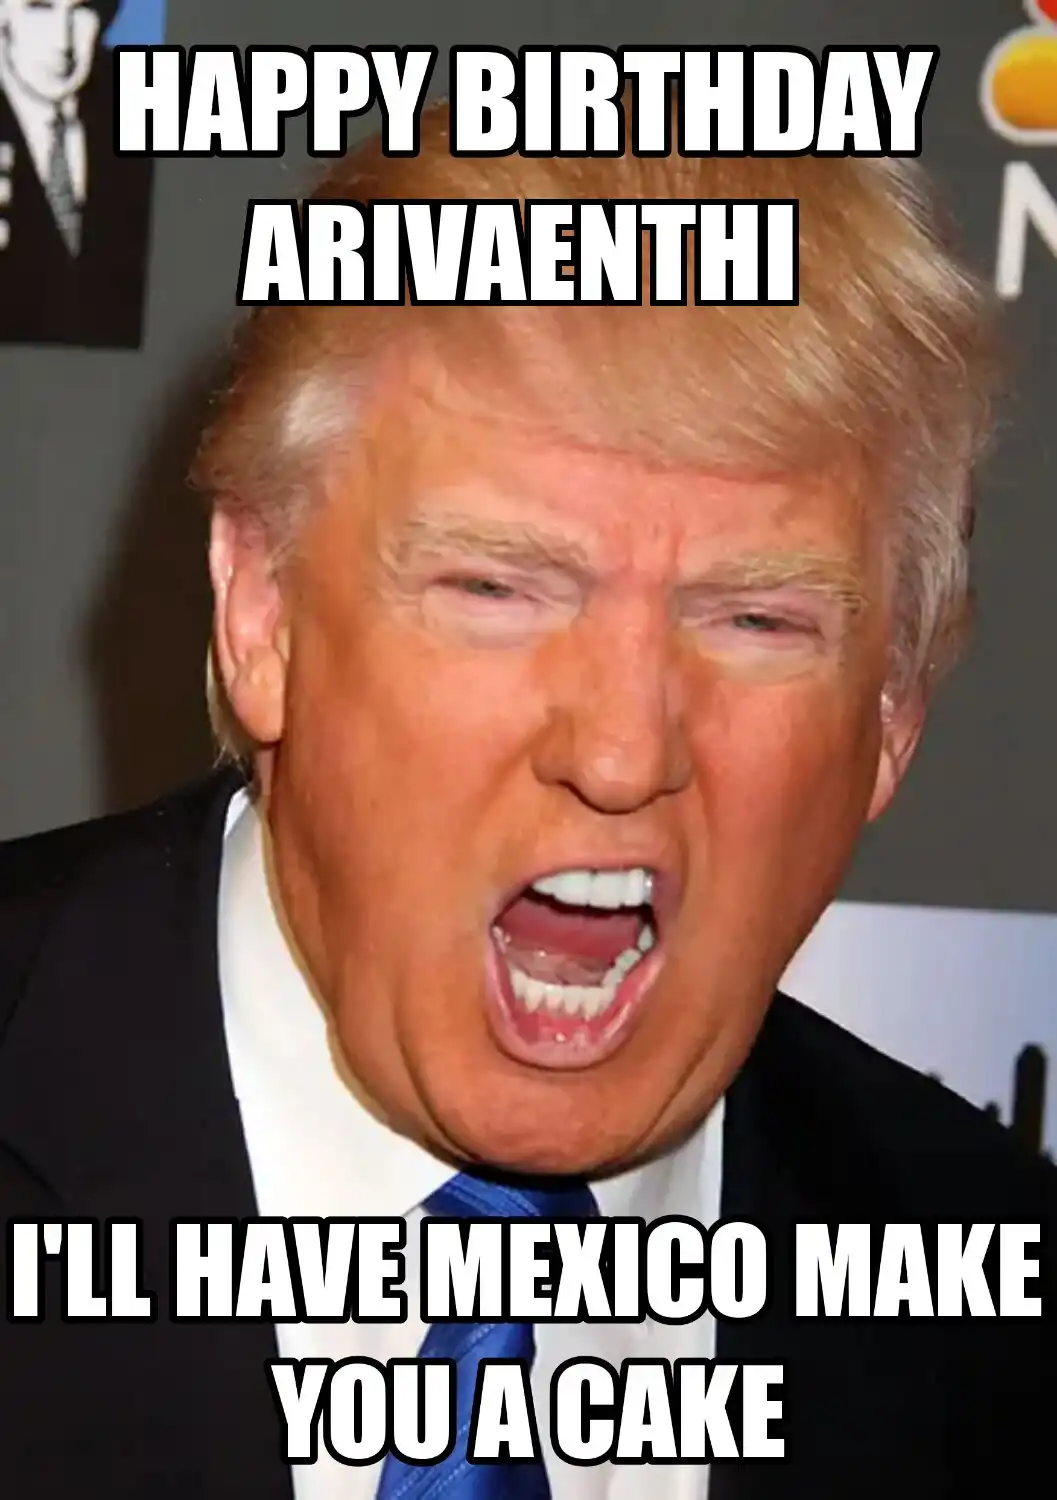 Happy Birthday Arivaenthi Mexico Make You A Cake Meme